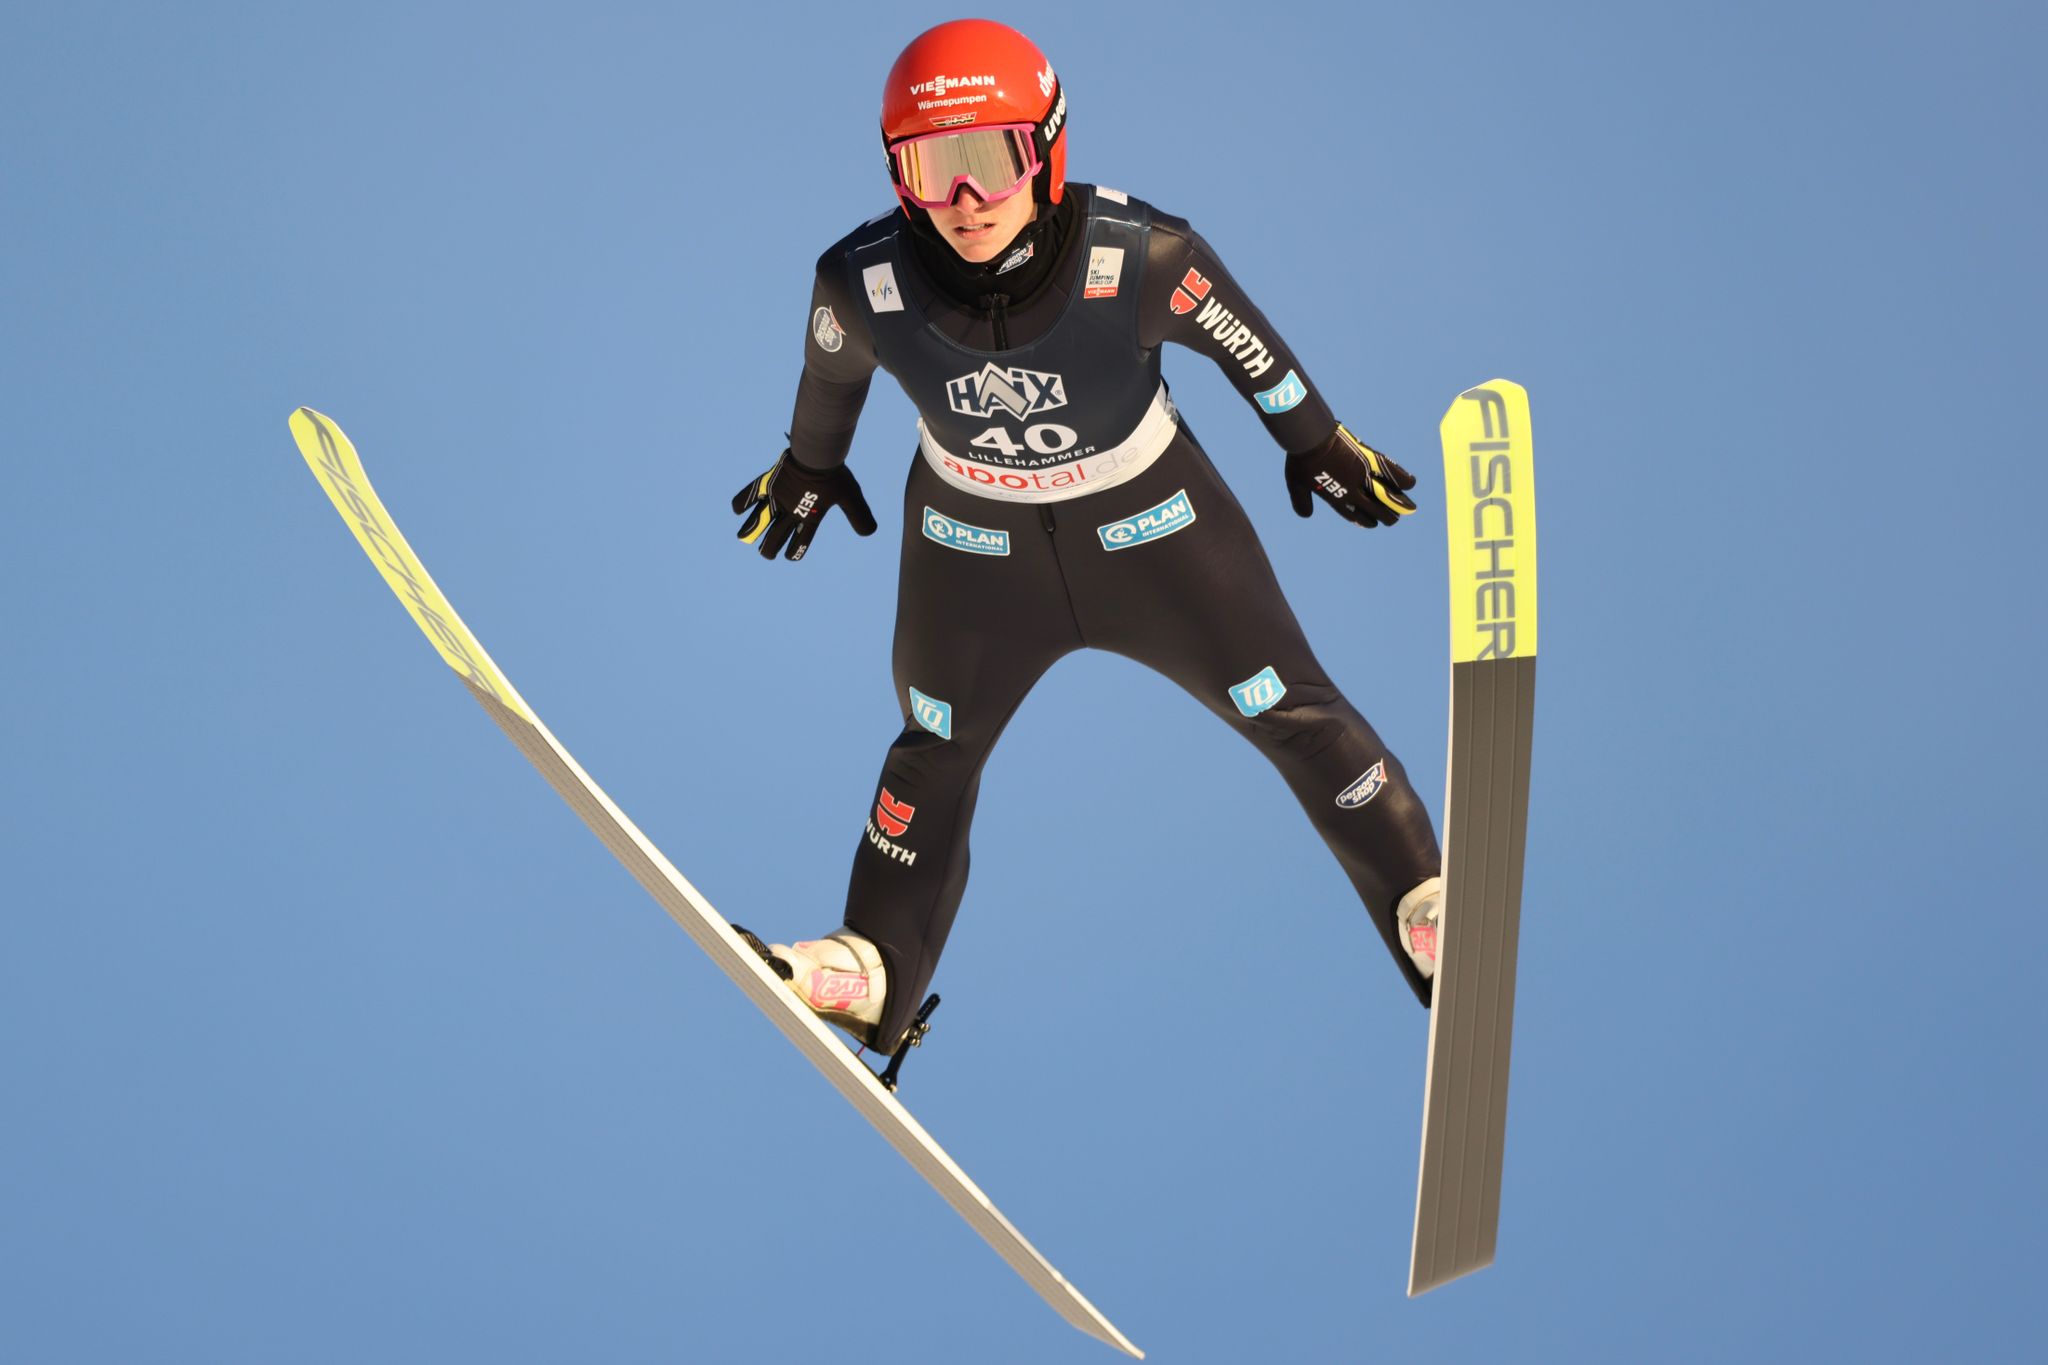 deutsche skispringerinnen in lahti chancenlos